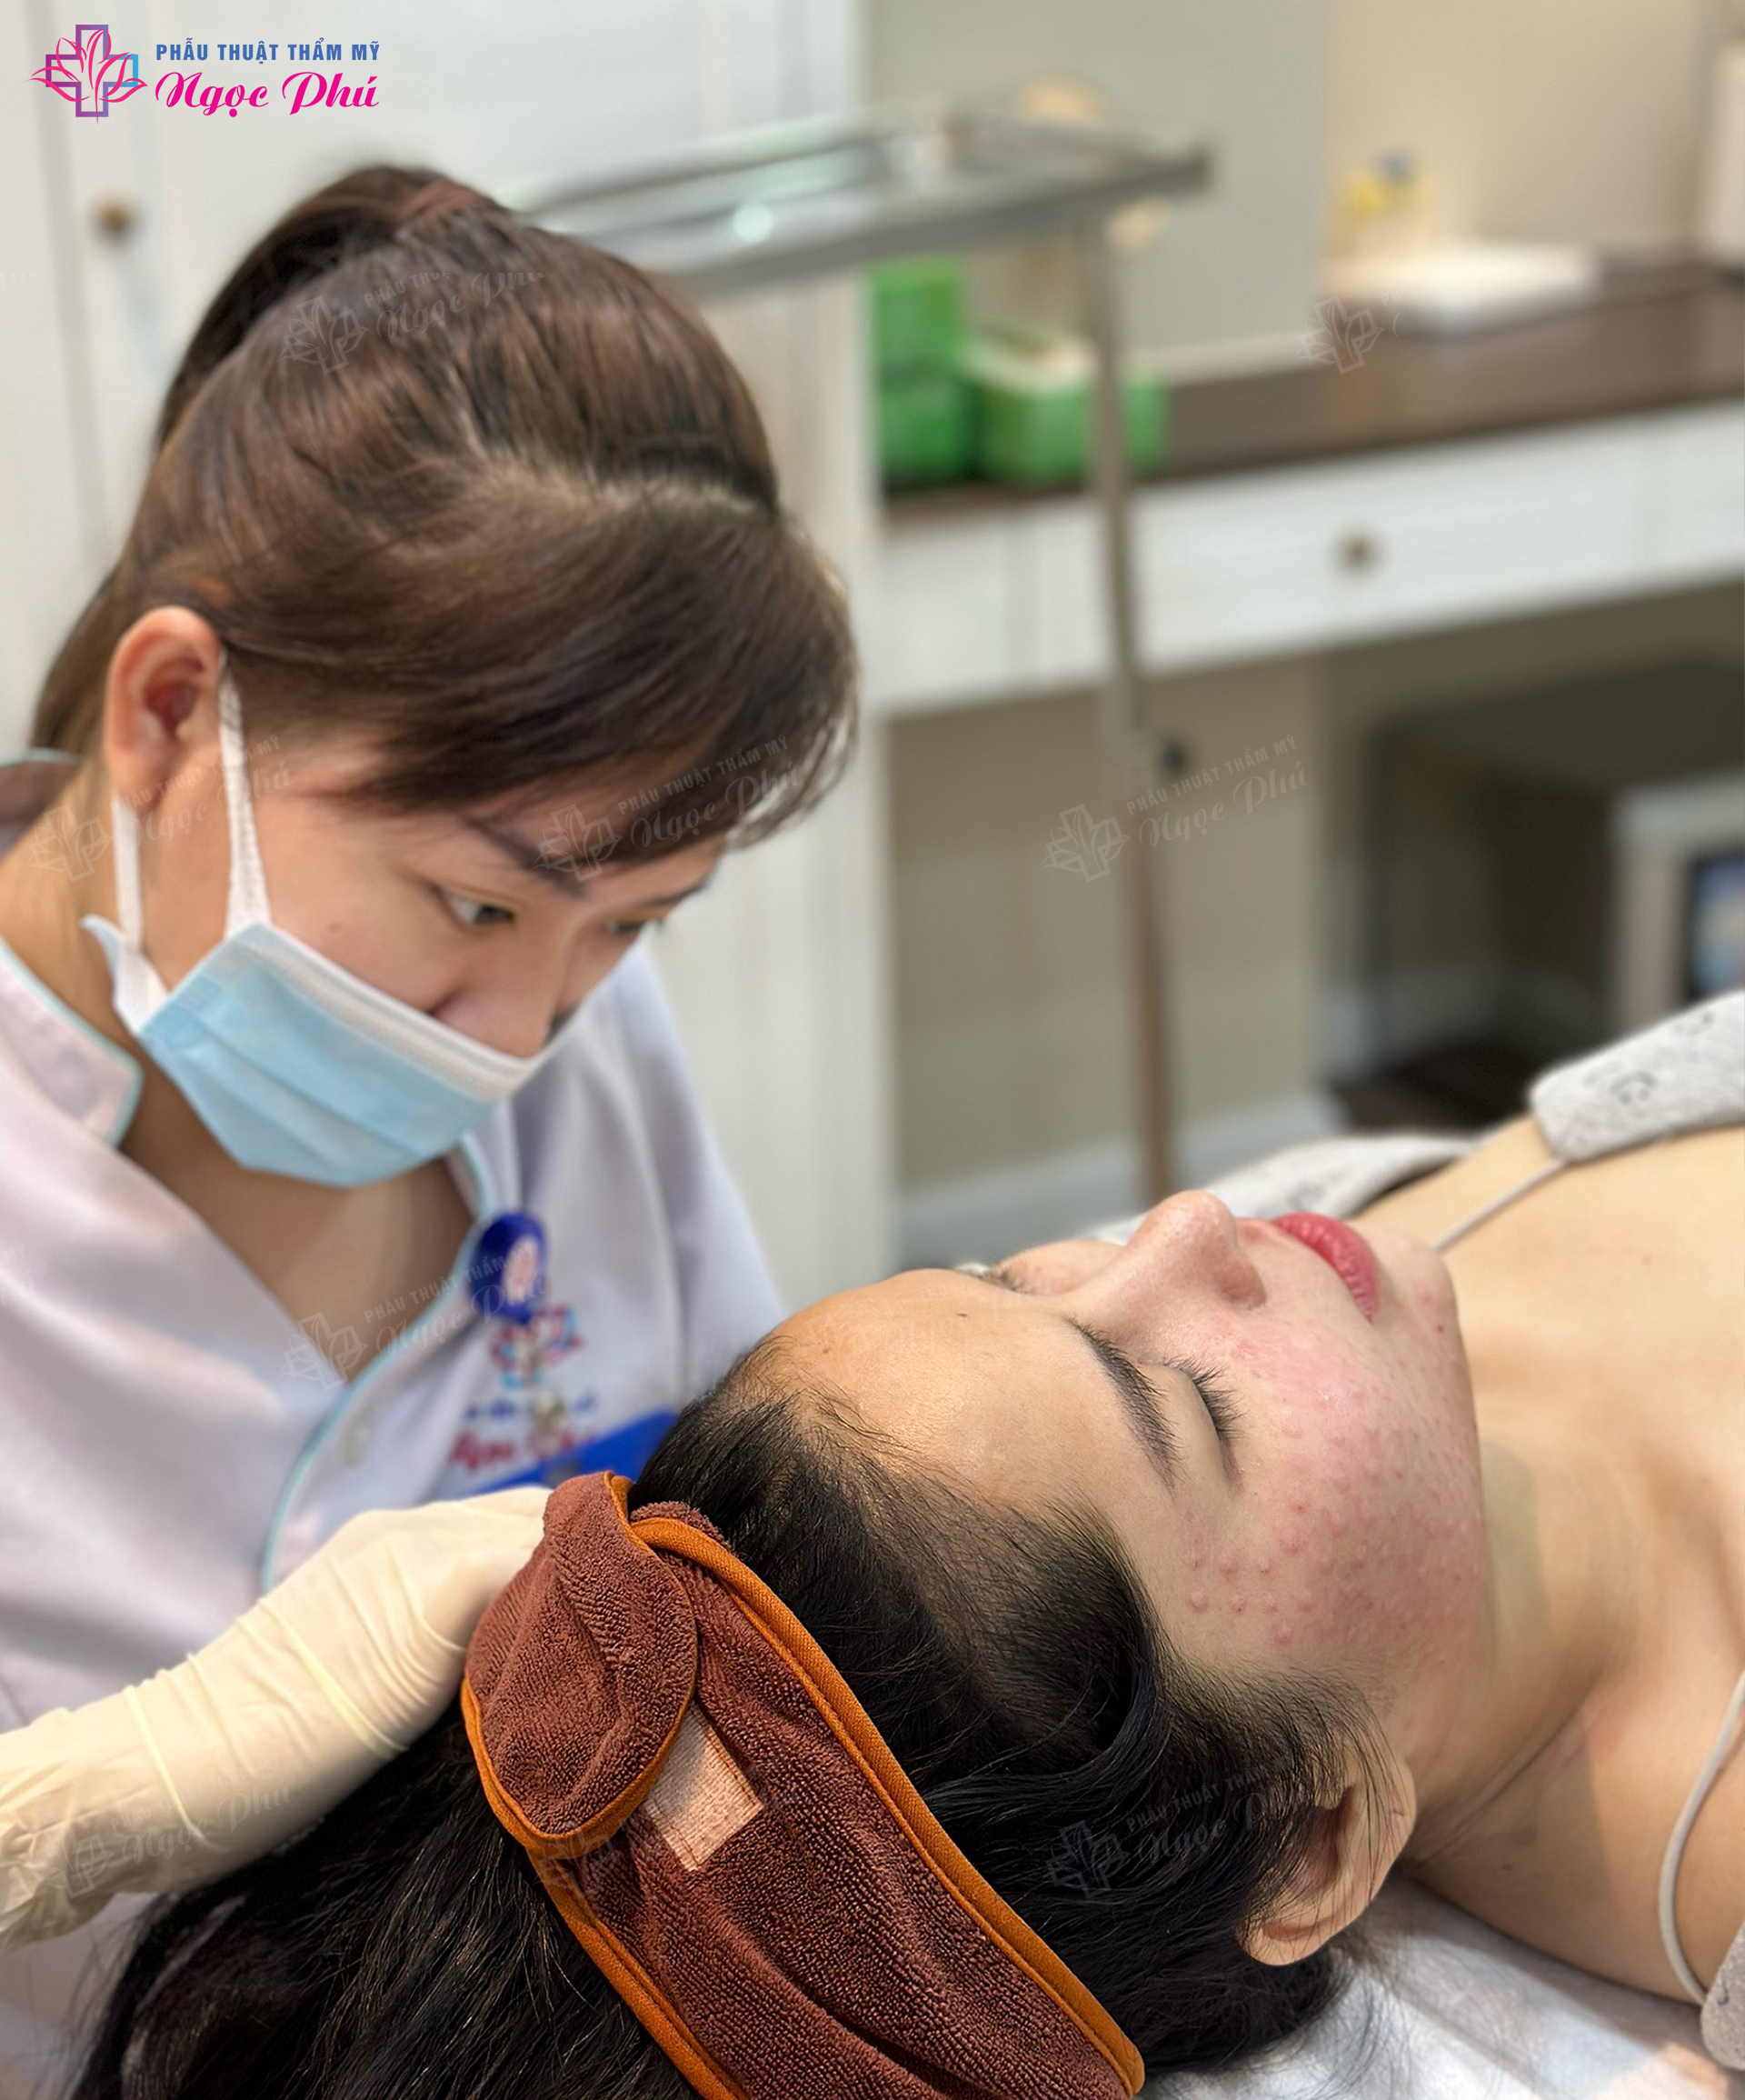 Dịch vụ tiêm Meso tại Thẩm mỹ Ngọc Phú là một trong những dịch vụ chăm sóc da công nghệ cao.